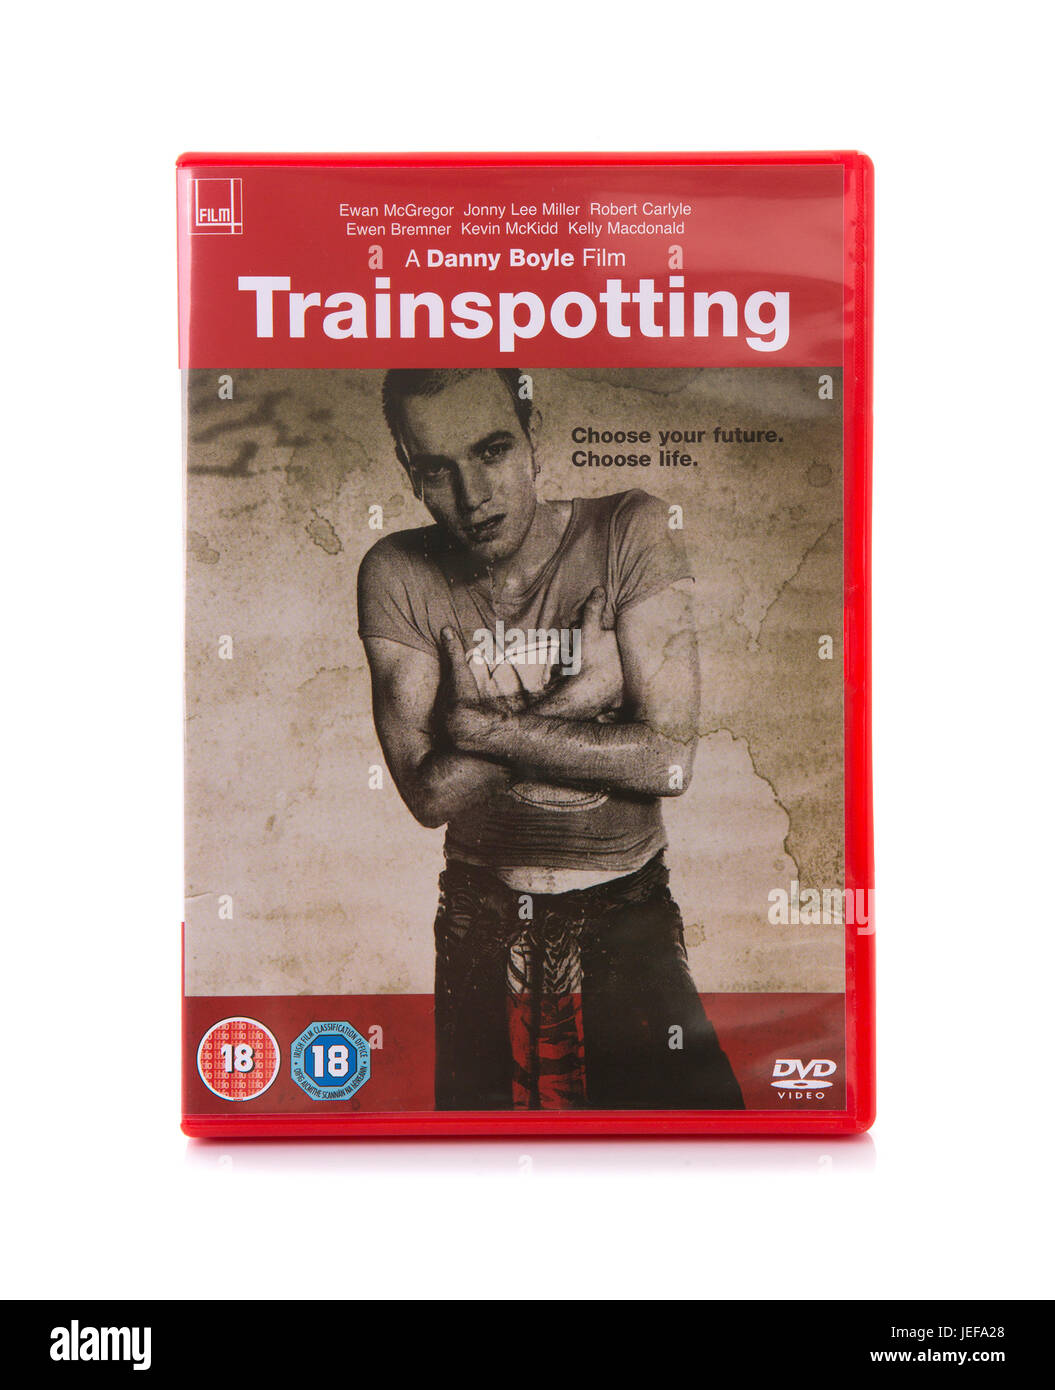 SWINDON, Royaume-Uni - le 24 juin 2017 : Trainspotting de Danny Boyle par DVD, film culte de 1996 Banque D'Images